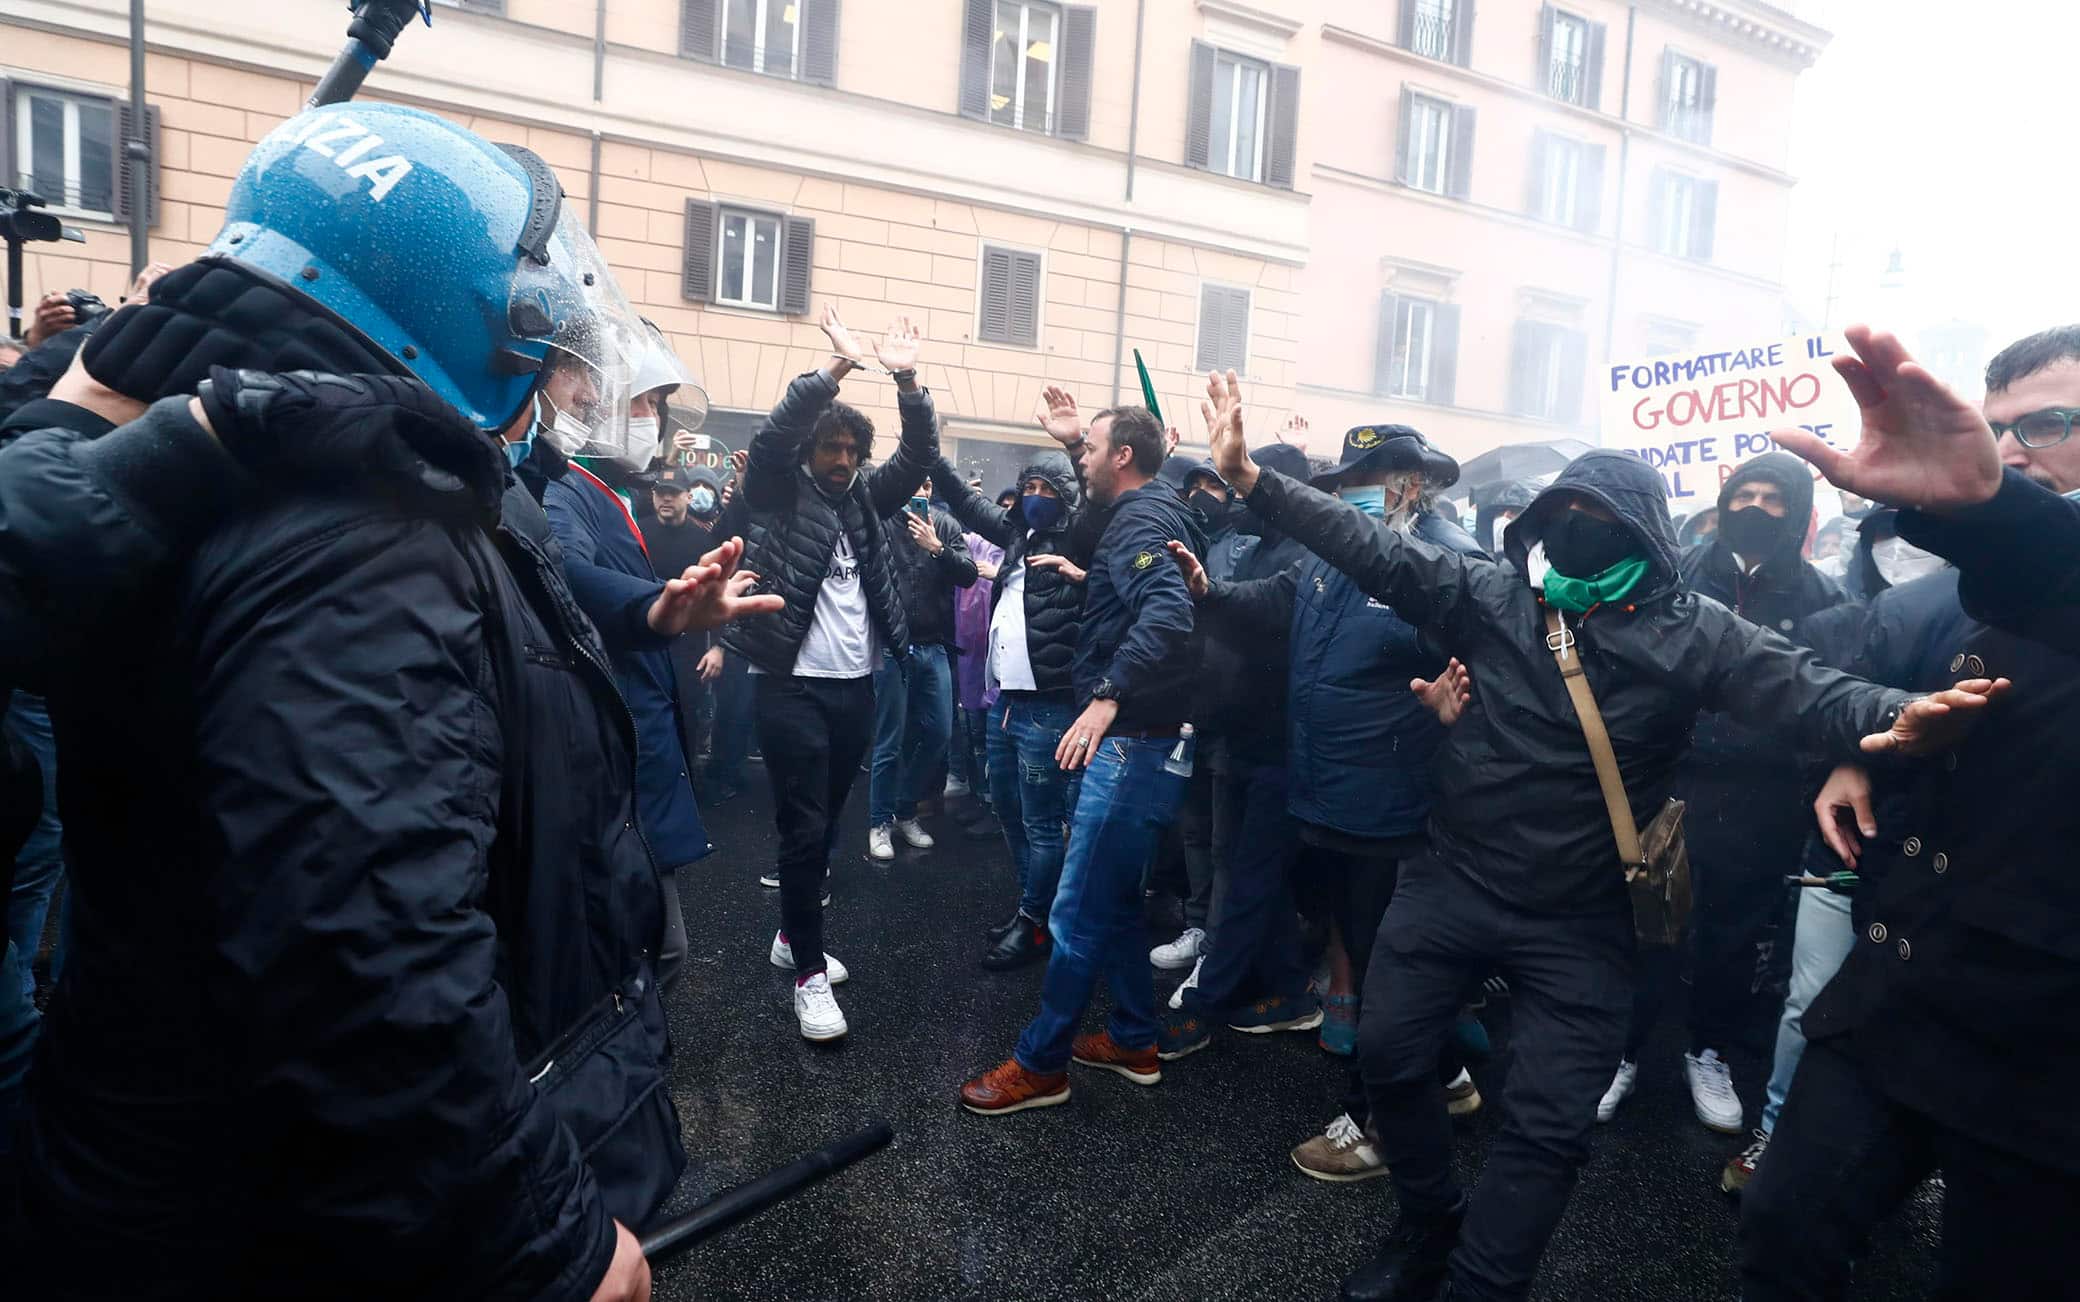 Alcuni partecipanti alla manifestazione organizzata a Piazza San Silvestro dal movmento IoApro si confrontano con le forze dell'ordine schierate in tenuta antisommossa, Roma, 12 aprile 2021.   I manifestanti, alcuni con le manette, e le mani alzate chiedono di andare verso Montecitorio. ANSA/ANGELO CARCONI